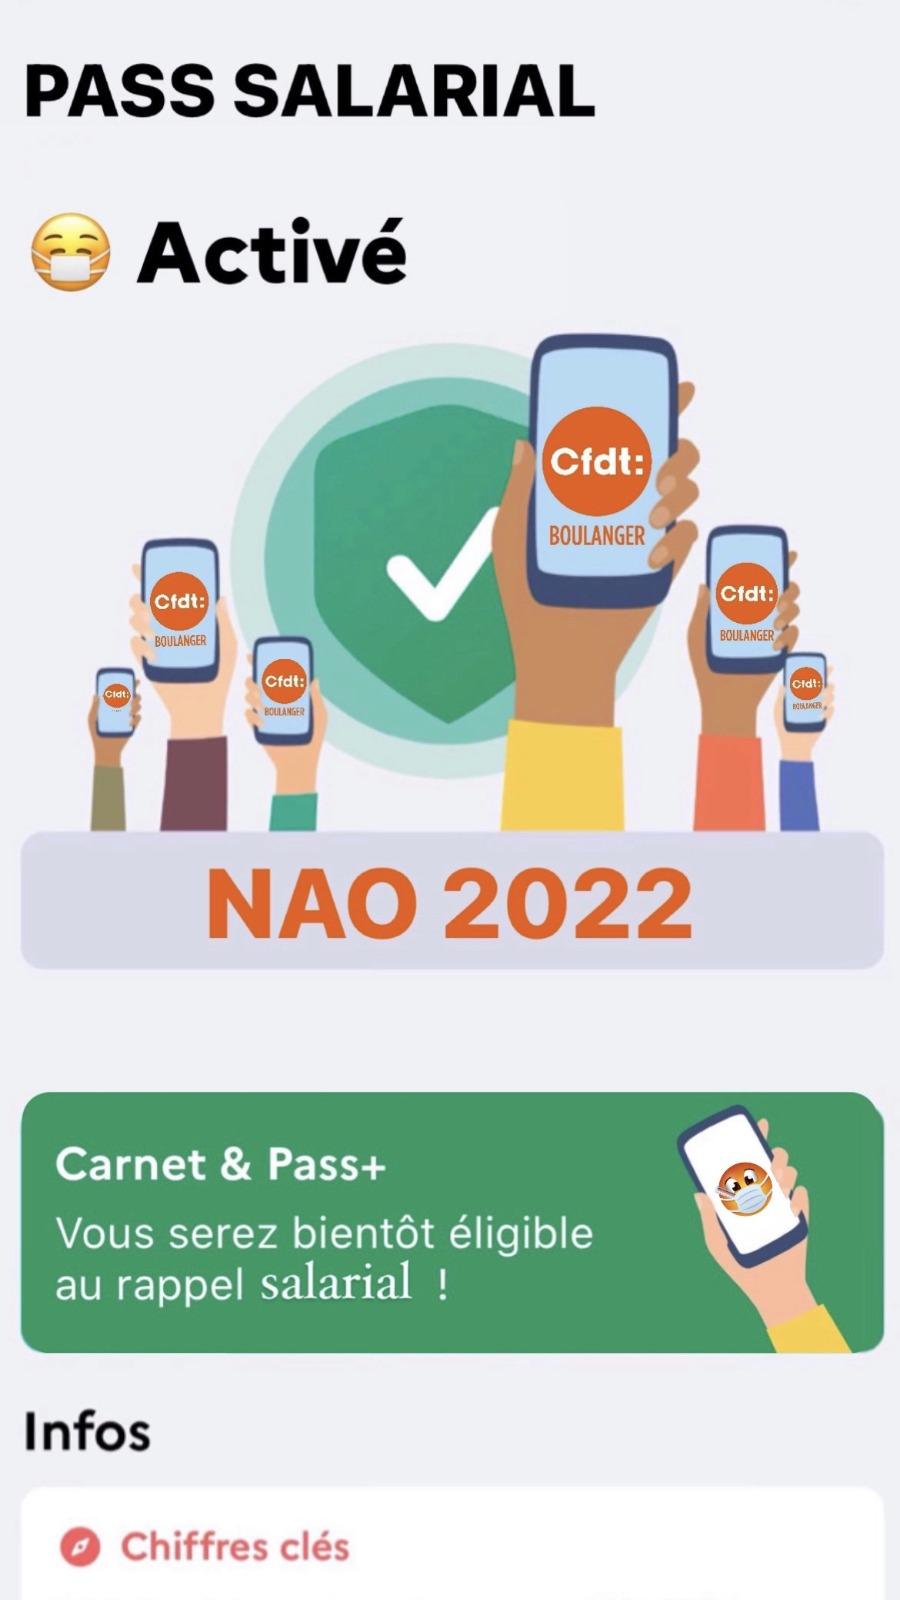 NAO 2022: Activation du Pass Salarial !